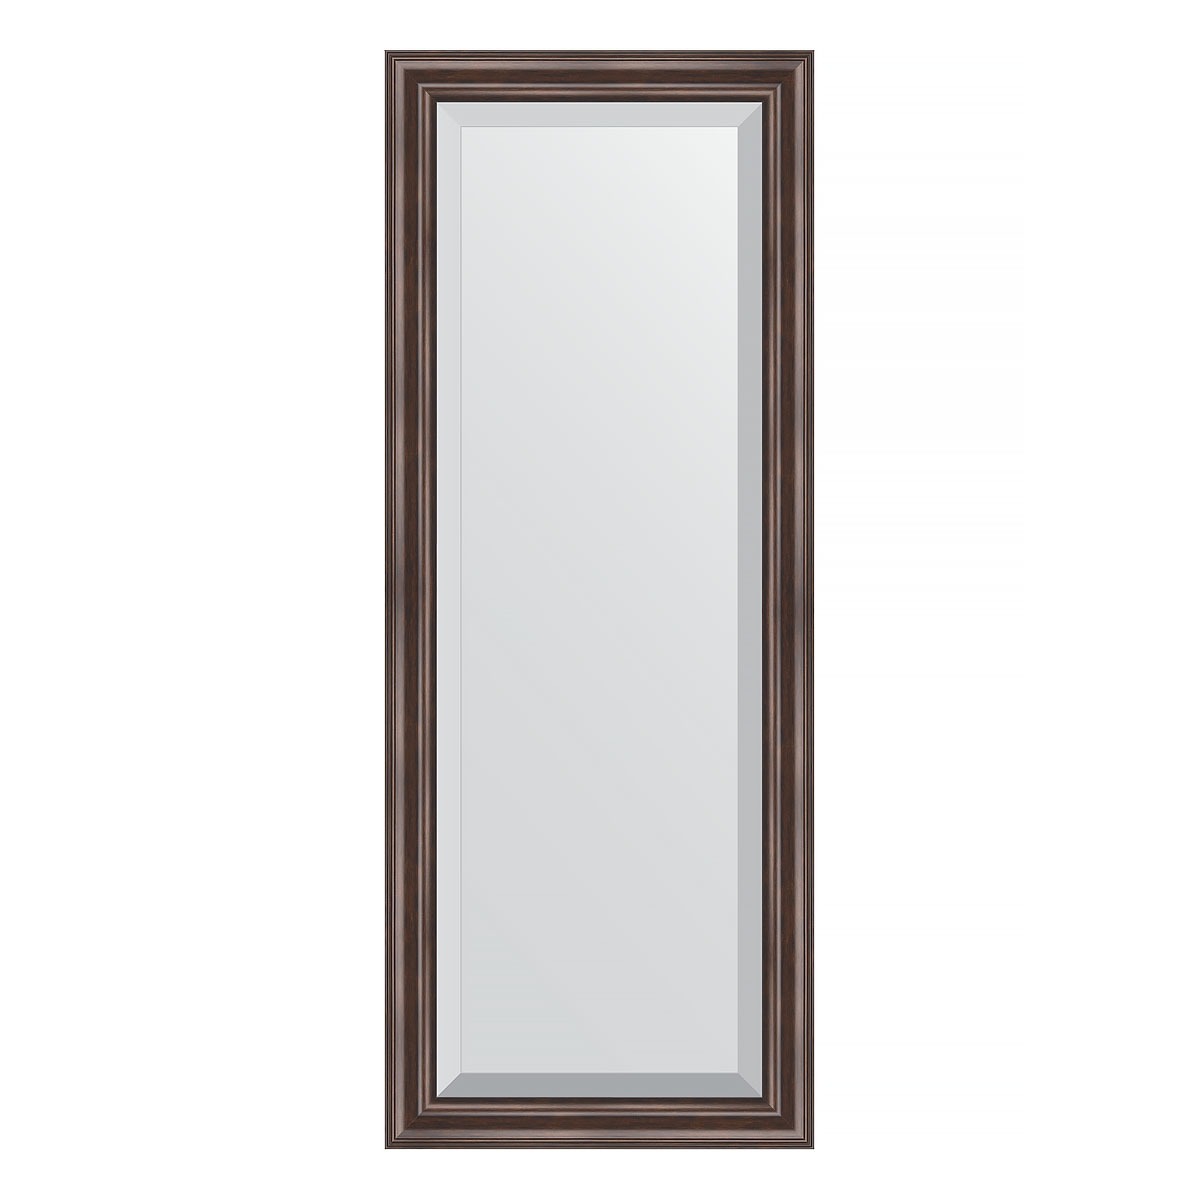 Зеркало с фацетом в багетной раме Evoform палисандр 62 мм 51х131 см